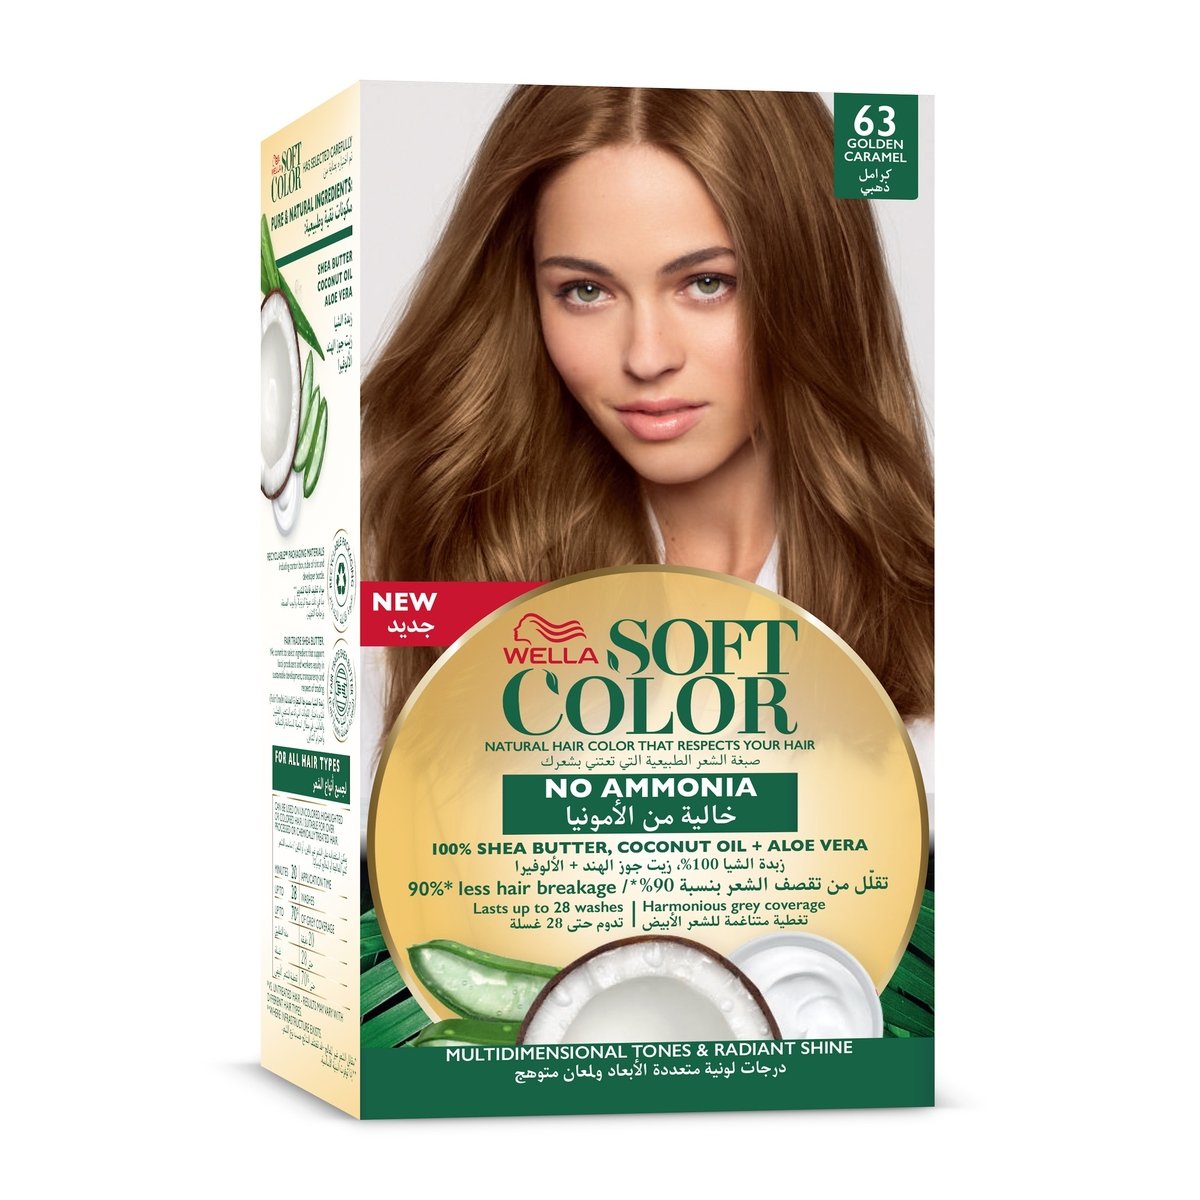 Soft Color Kit 63 Golden Caramel 1 pkt